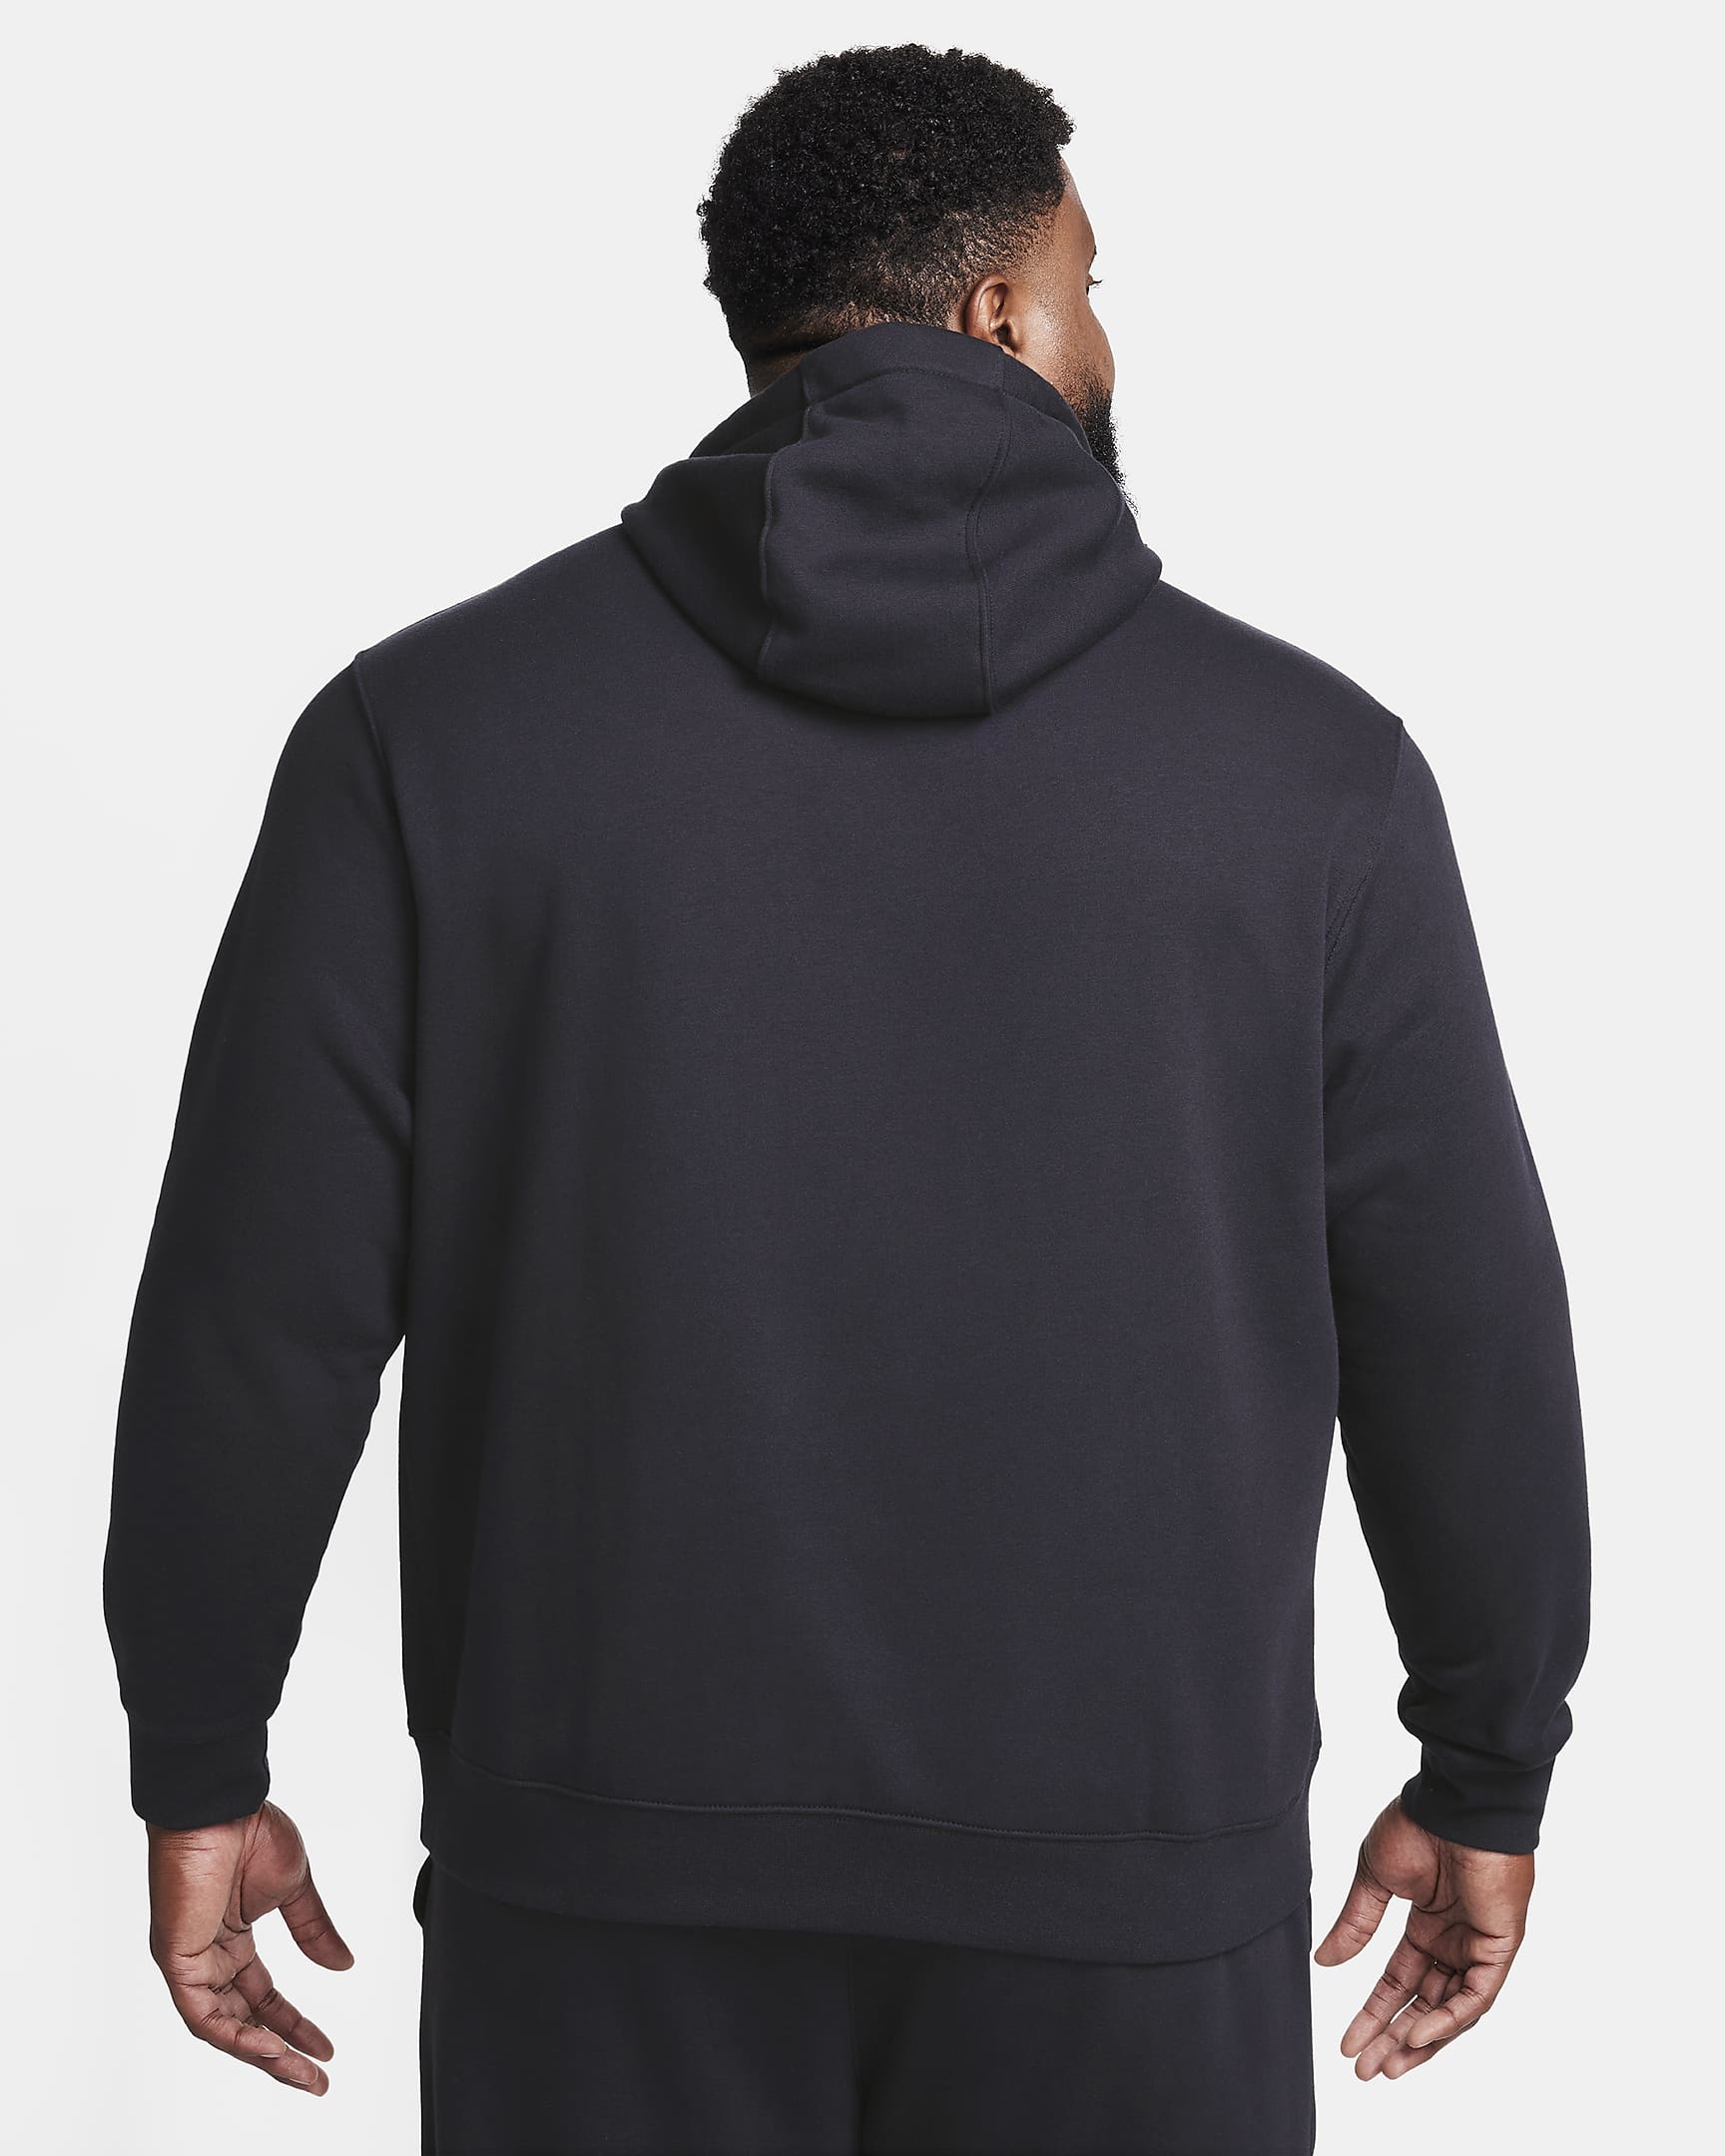 Nike Club Fleece Men's Patch Pullover Hoodie - Black/Black